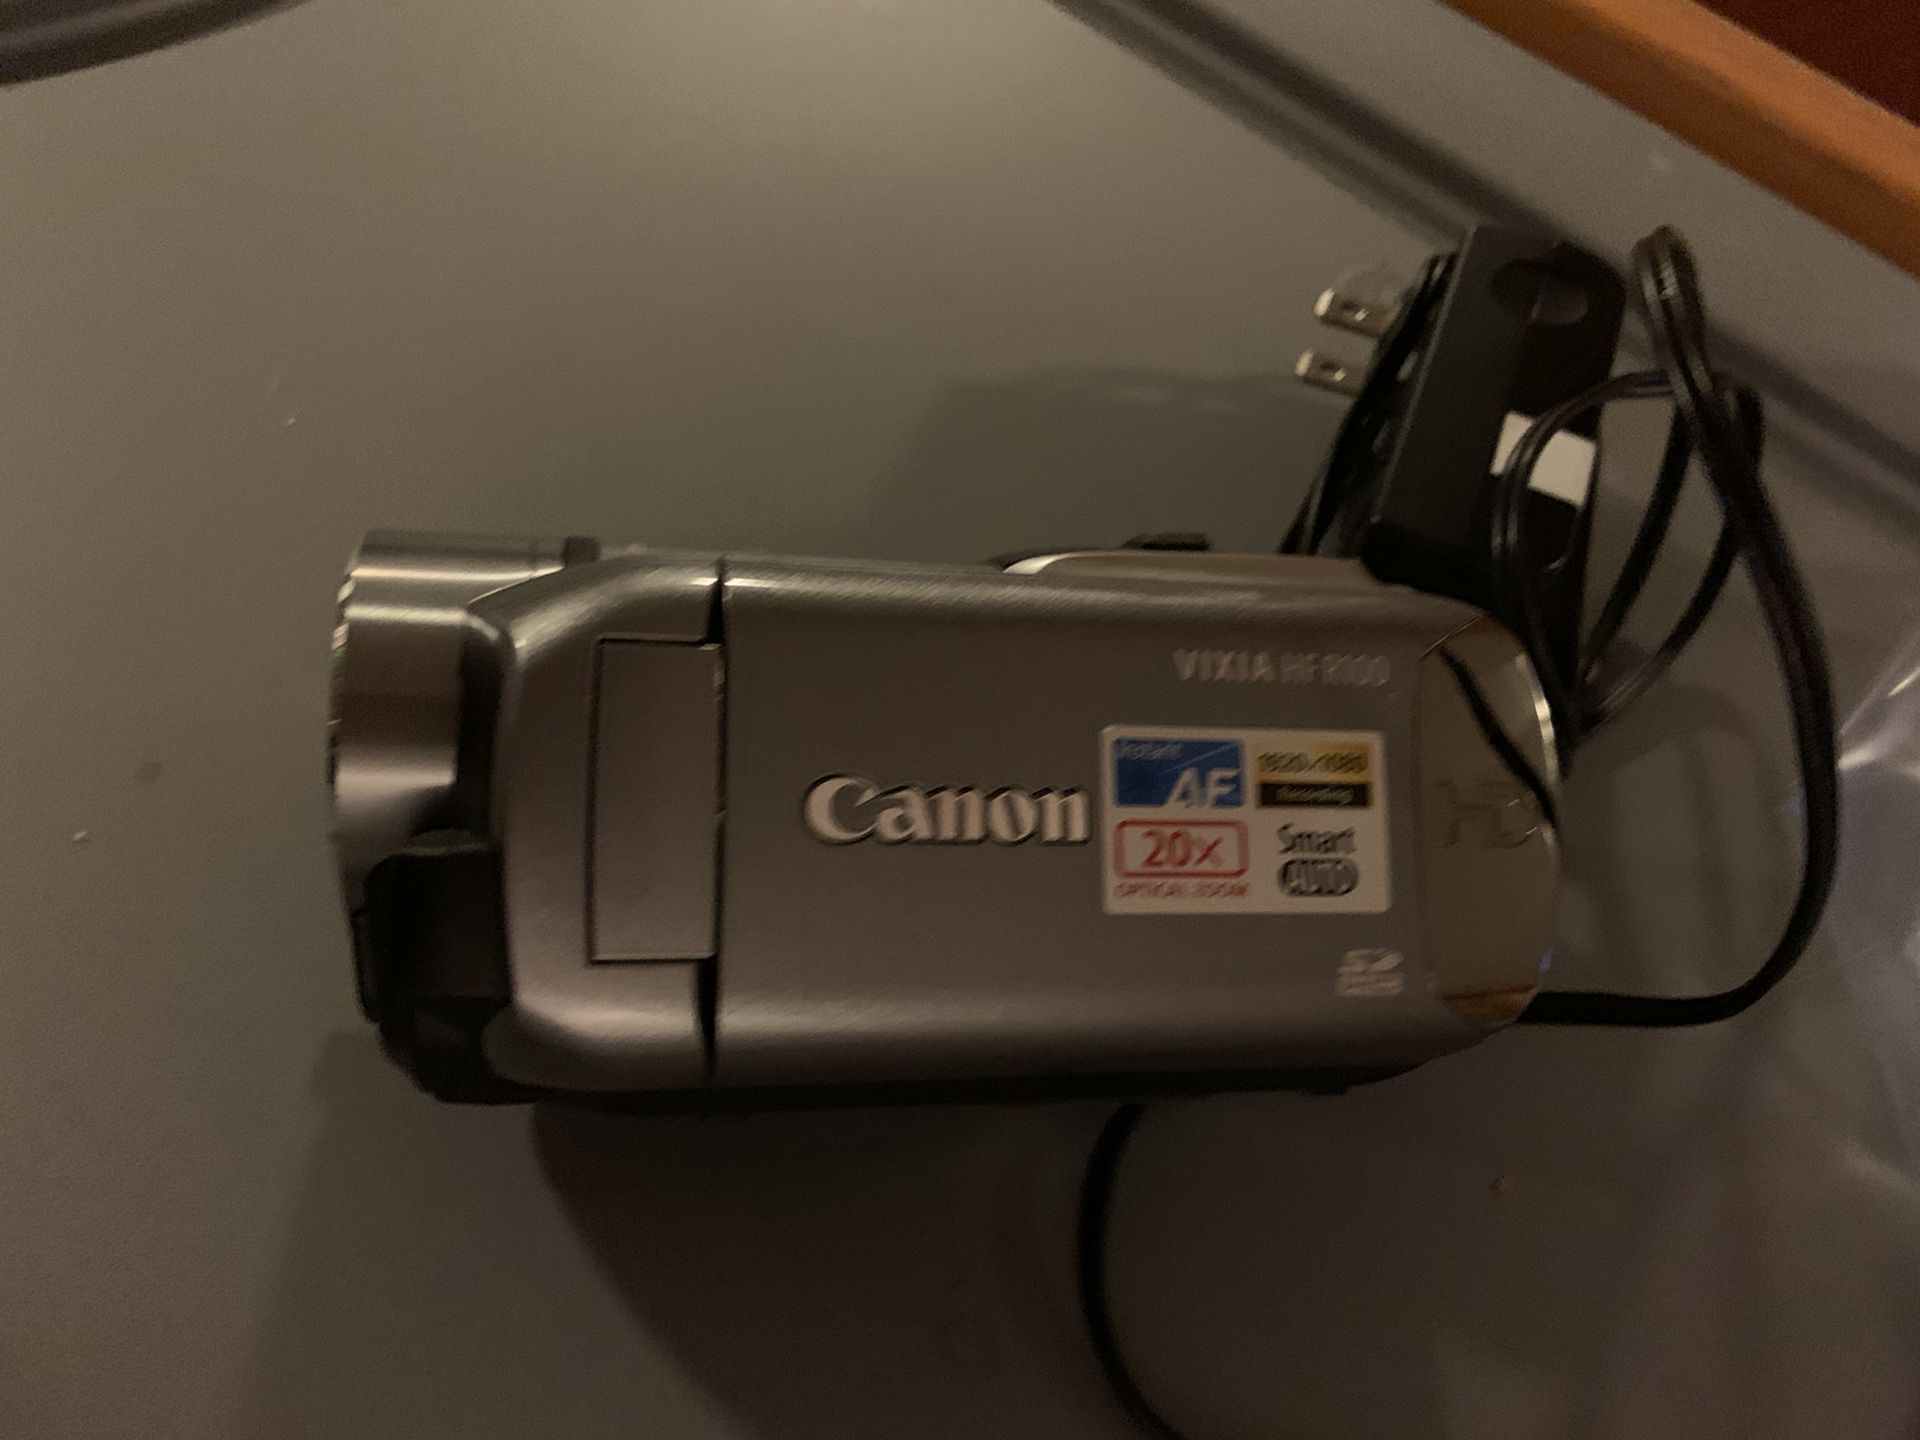 Canon video camera